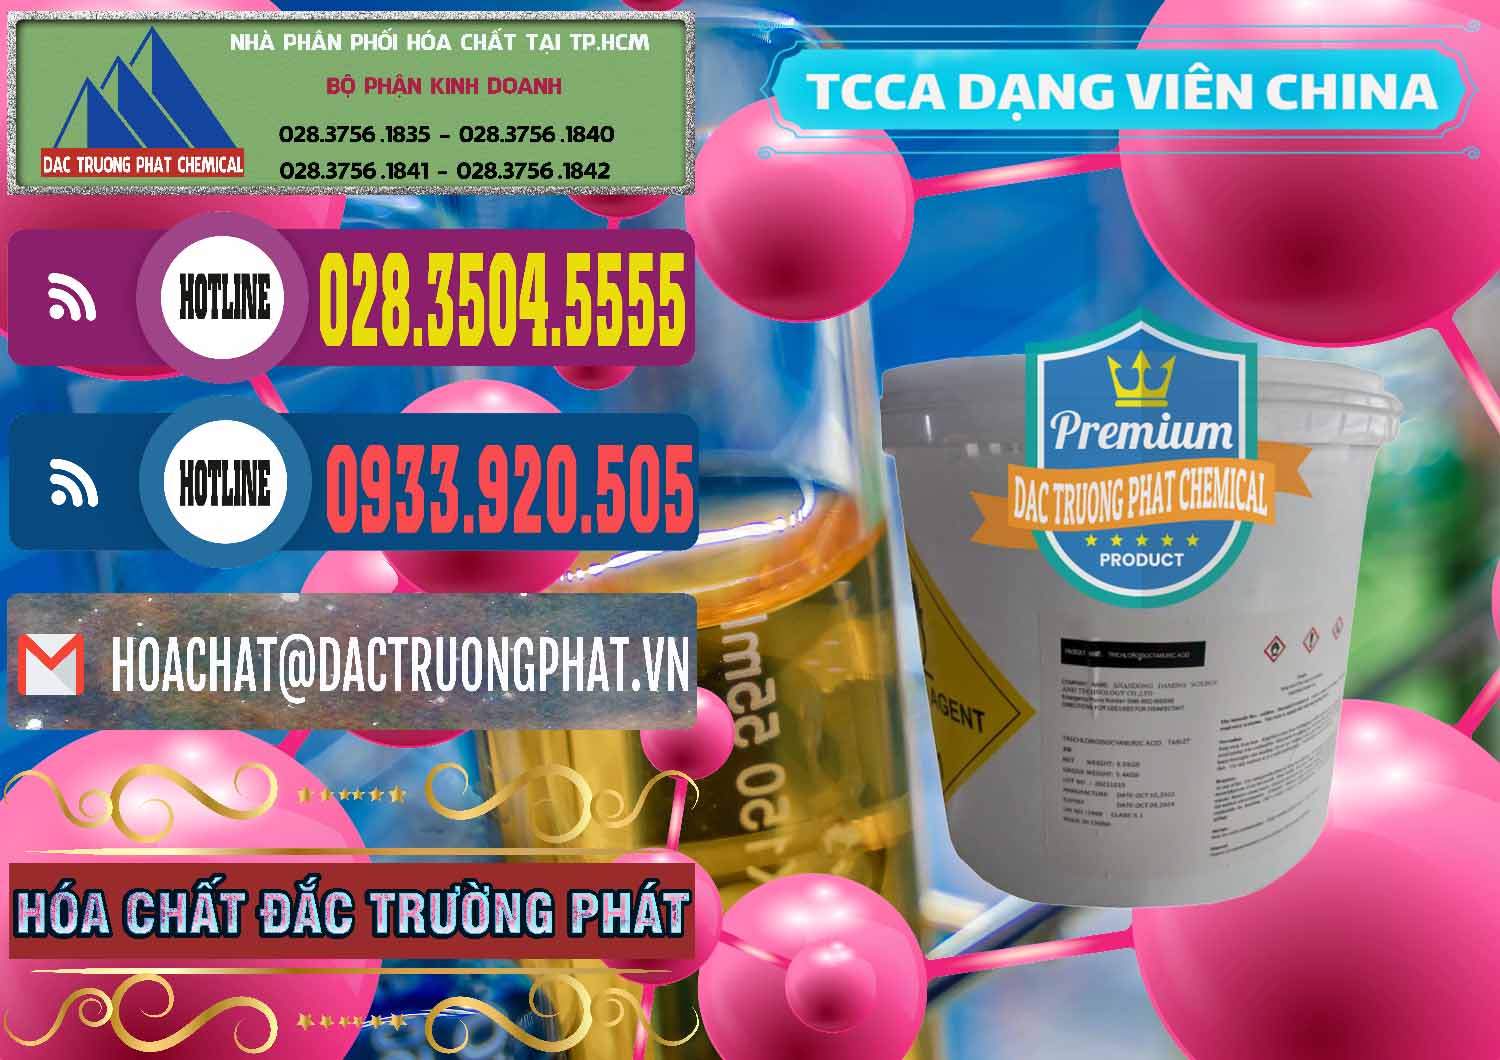 Nơi bán - cung cấp TCCA - Acid Trichloroisocyanuric Dạng Viên Thùng 5kg Trung Quốc China - 0379 - Chuyên cung cấp & nhập khẩu hóa chất tại TP.HCM - muabanhoachat.com.vn